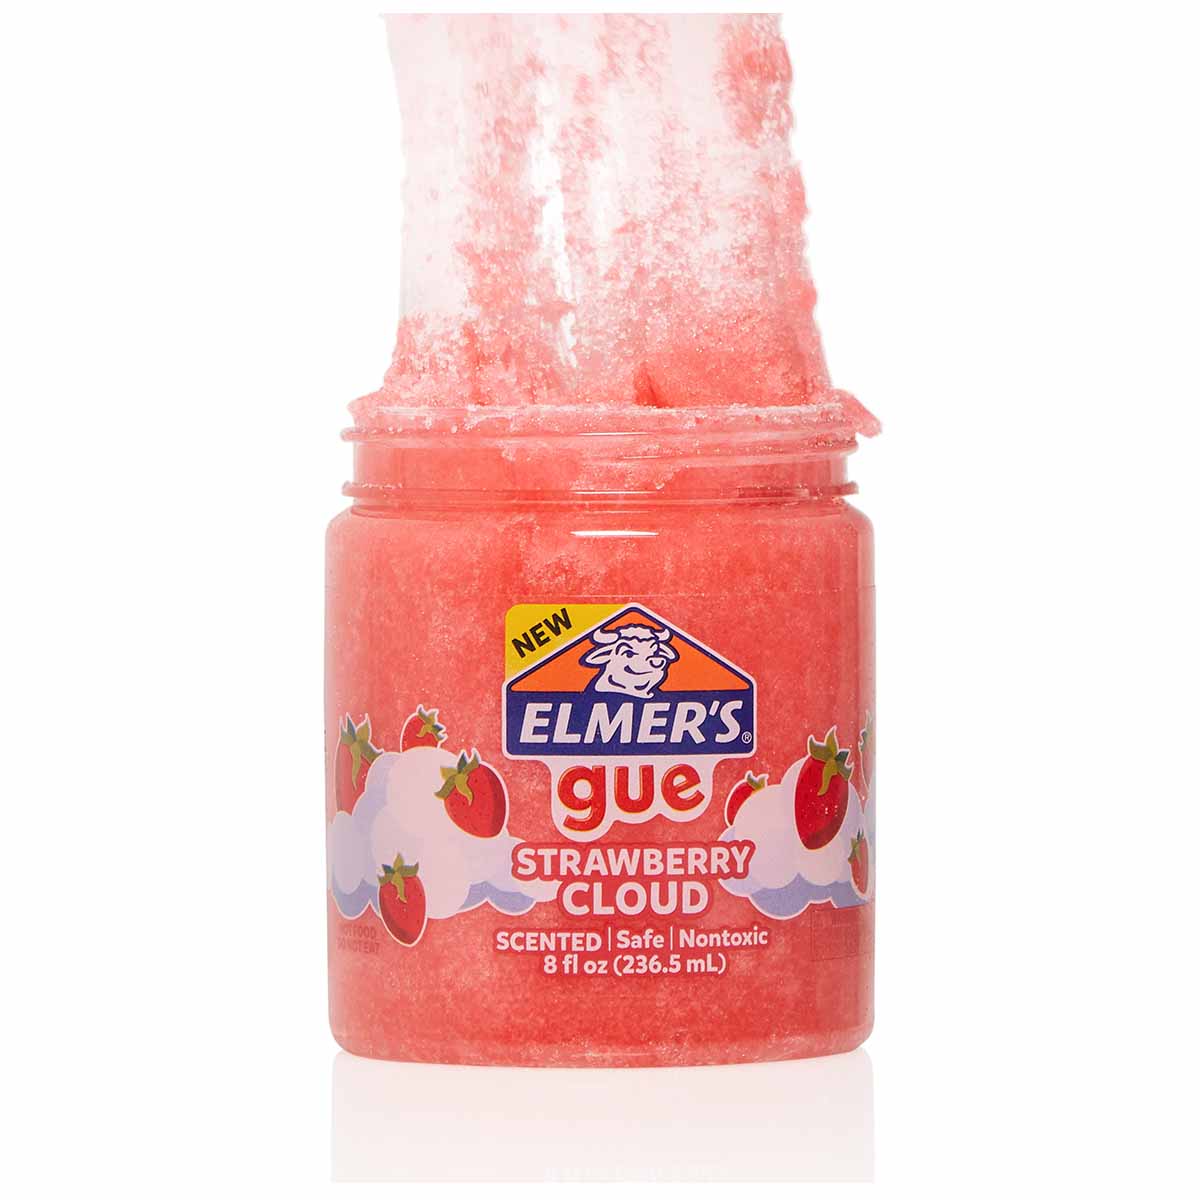 Slime Gue Cloud Fresa Aroma Frutal 236 ml Niños Niñas Elmers